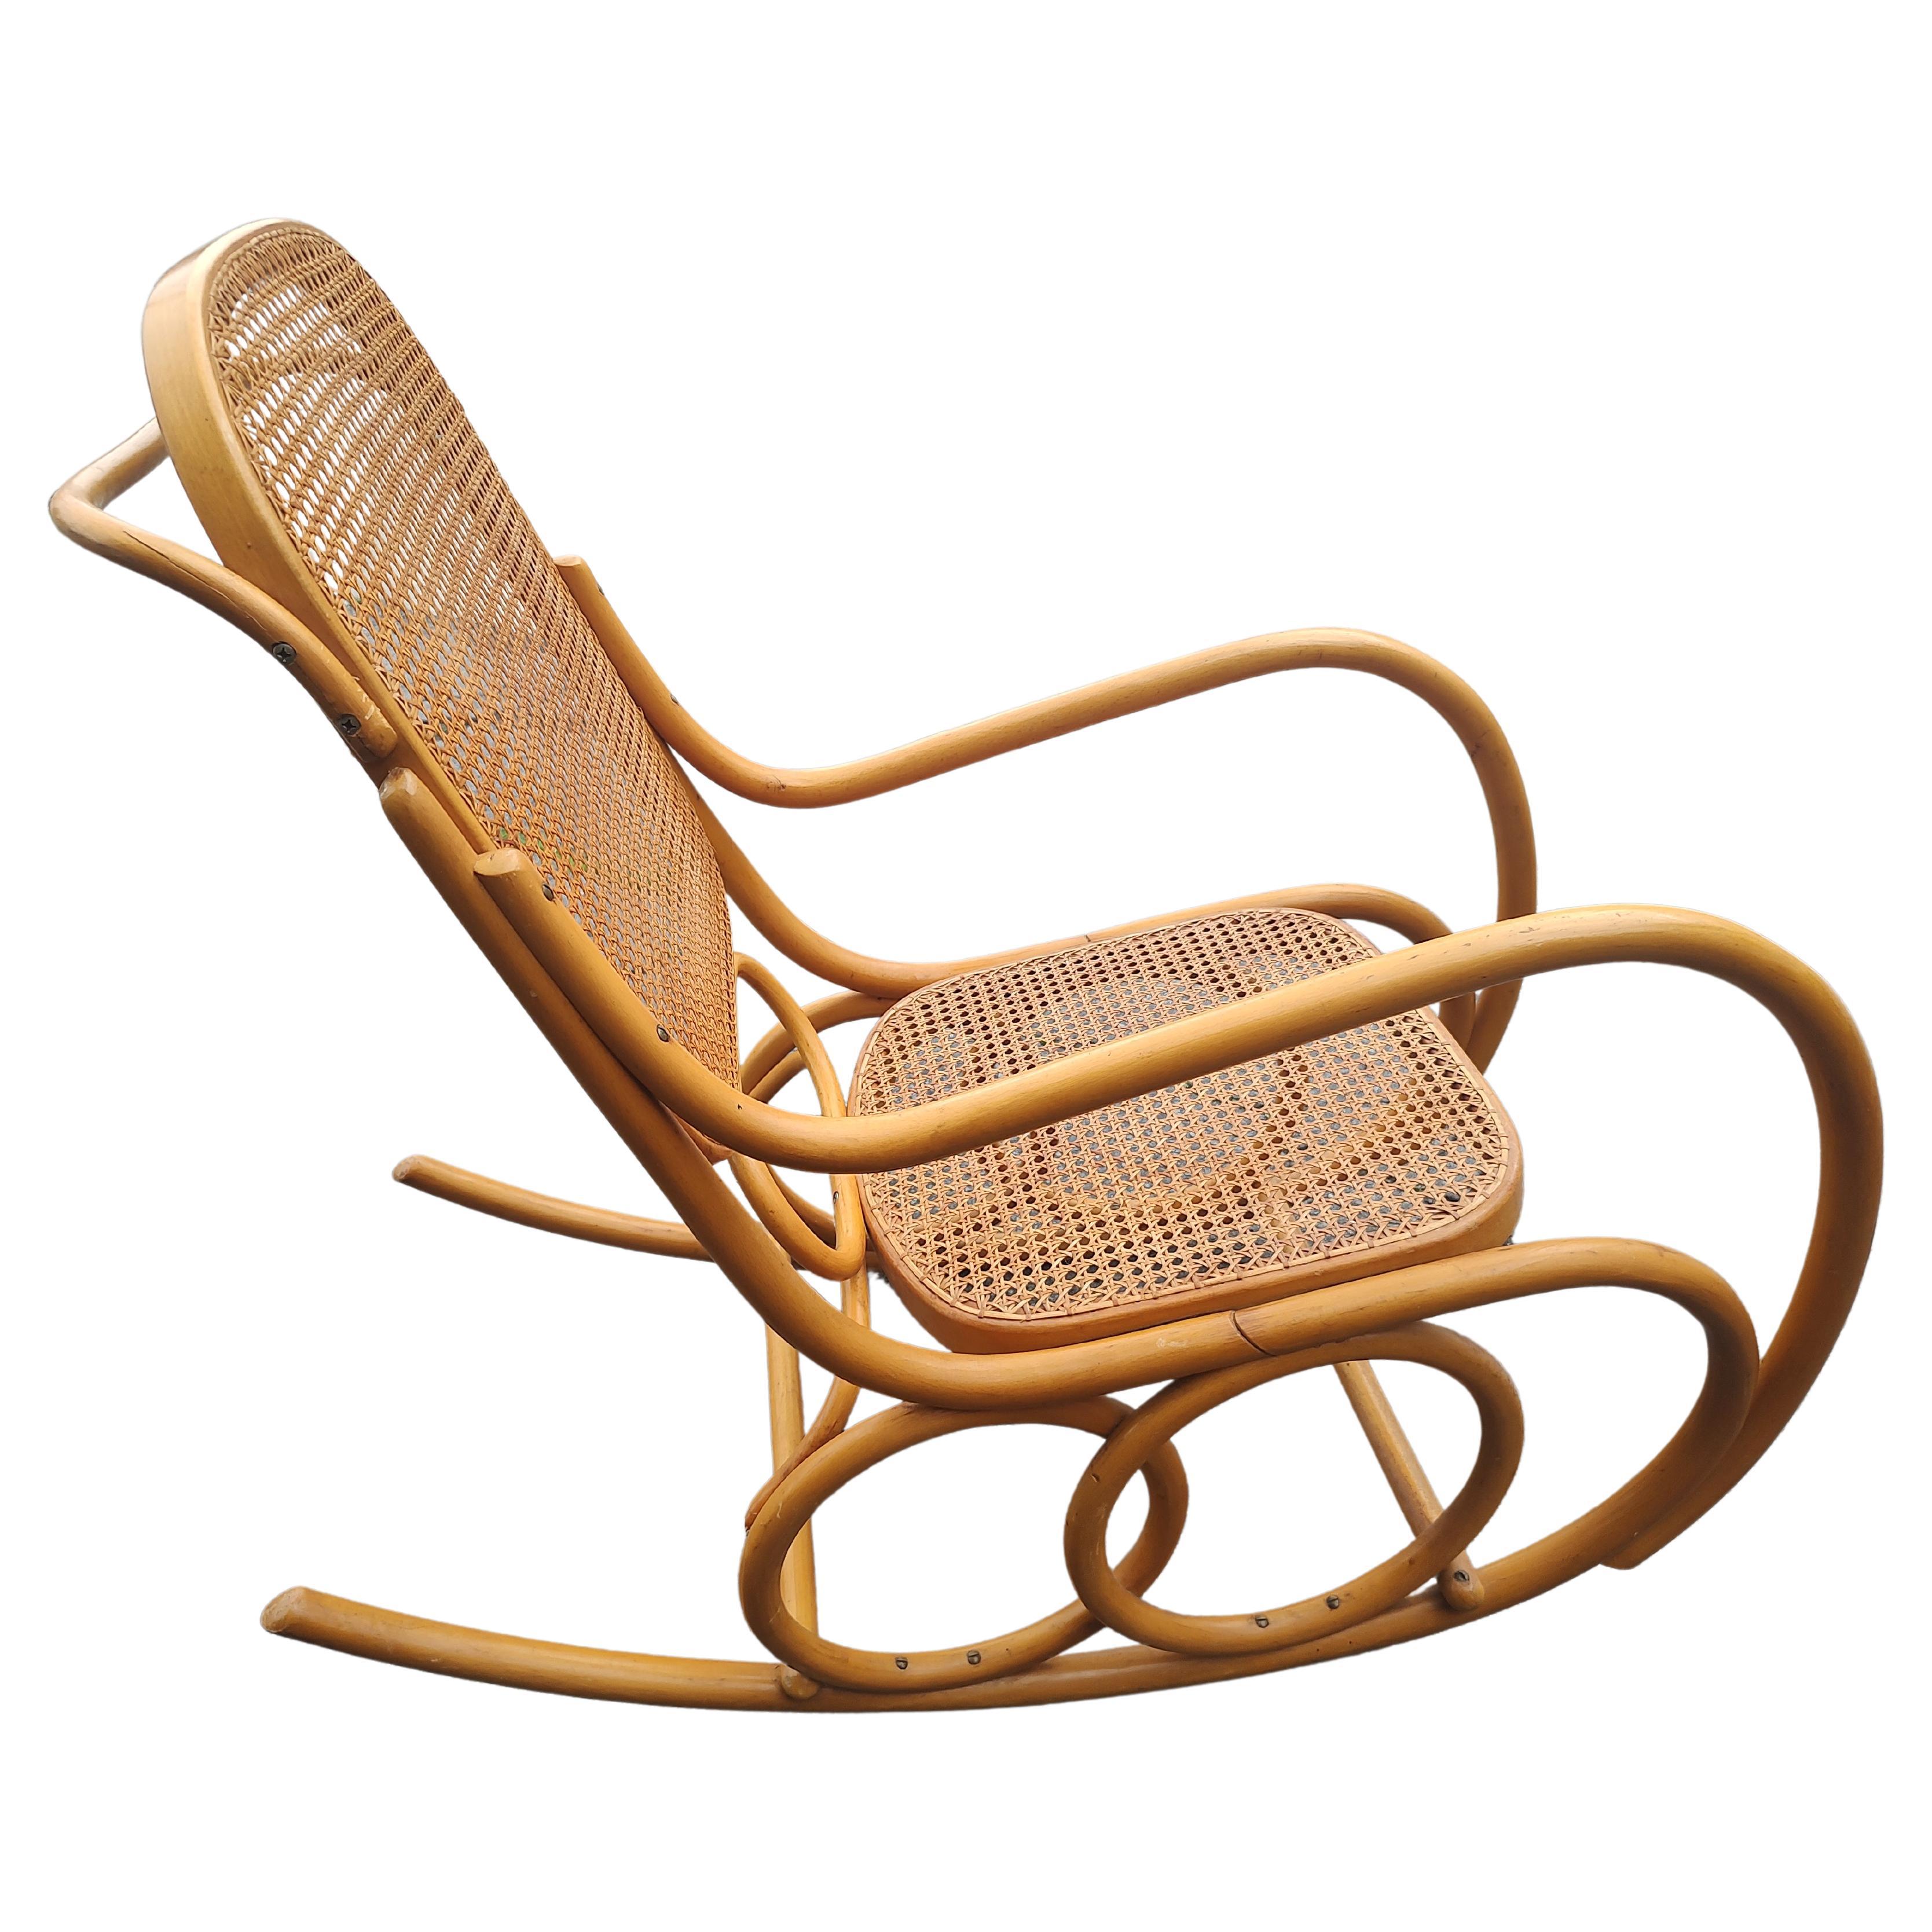 Simple et élégante chaise à bascule Thonet en bois courbé sculpté, originaire de Tchécoslovaquie, vers 1960. Assise et dossier cannés à la main avec un fabuleux design en bois courbé. Des cercles concentriques forment la base avec d'autres éléments